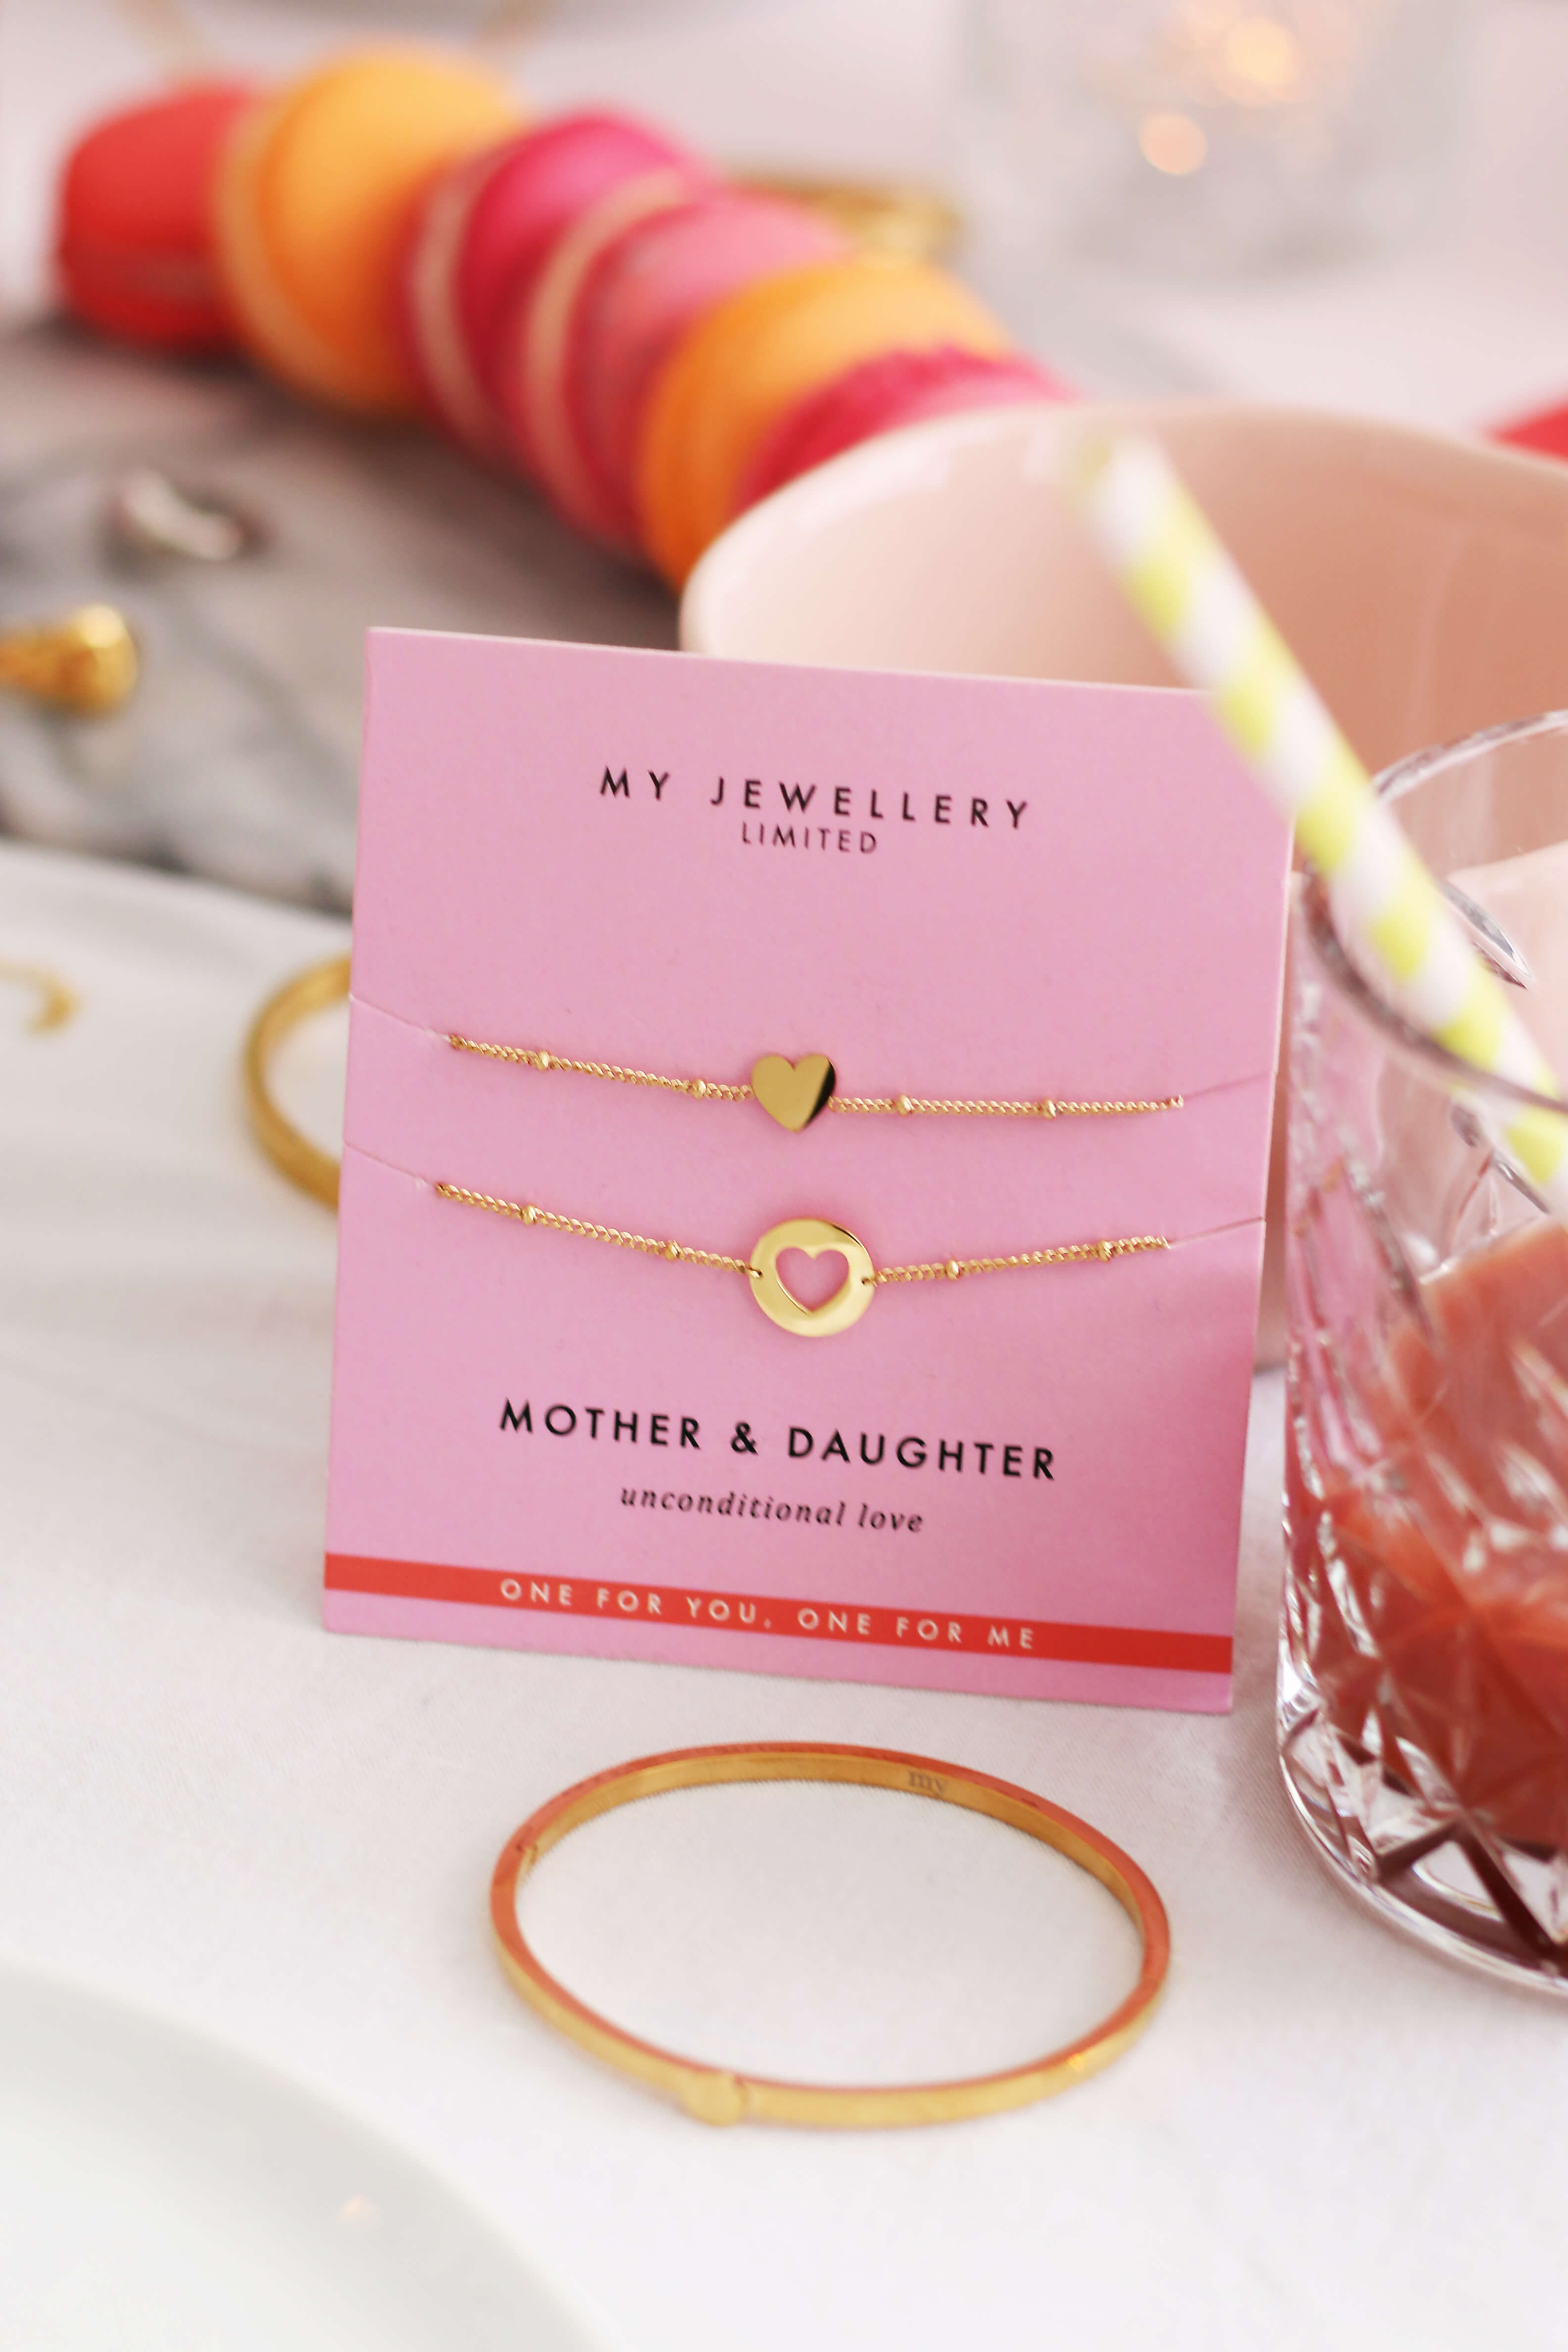 Leerling Bourgondië grafiek Mother & Daughter armband van My Jewellery, het perfecte cadeau voor  moederdag - Lodiblogt